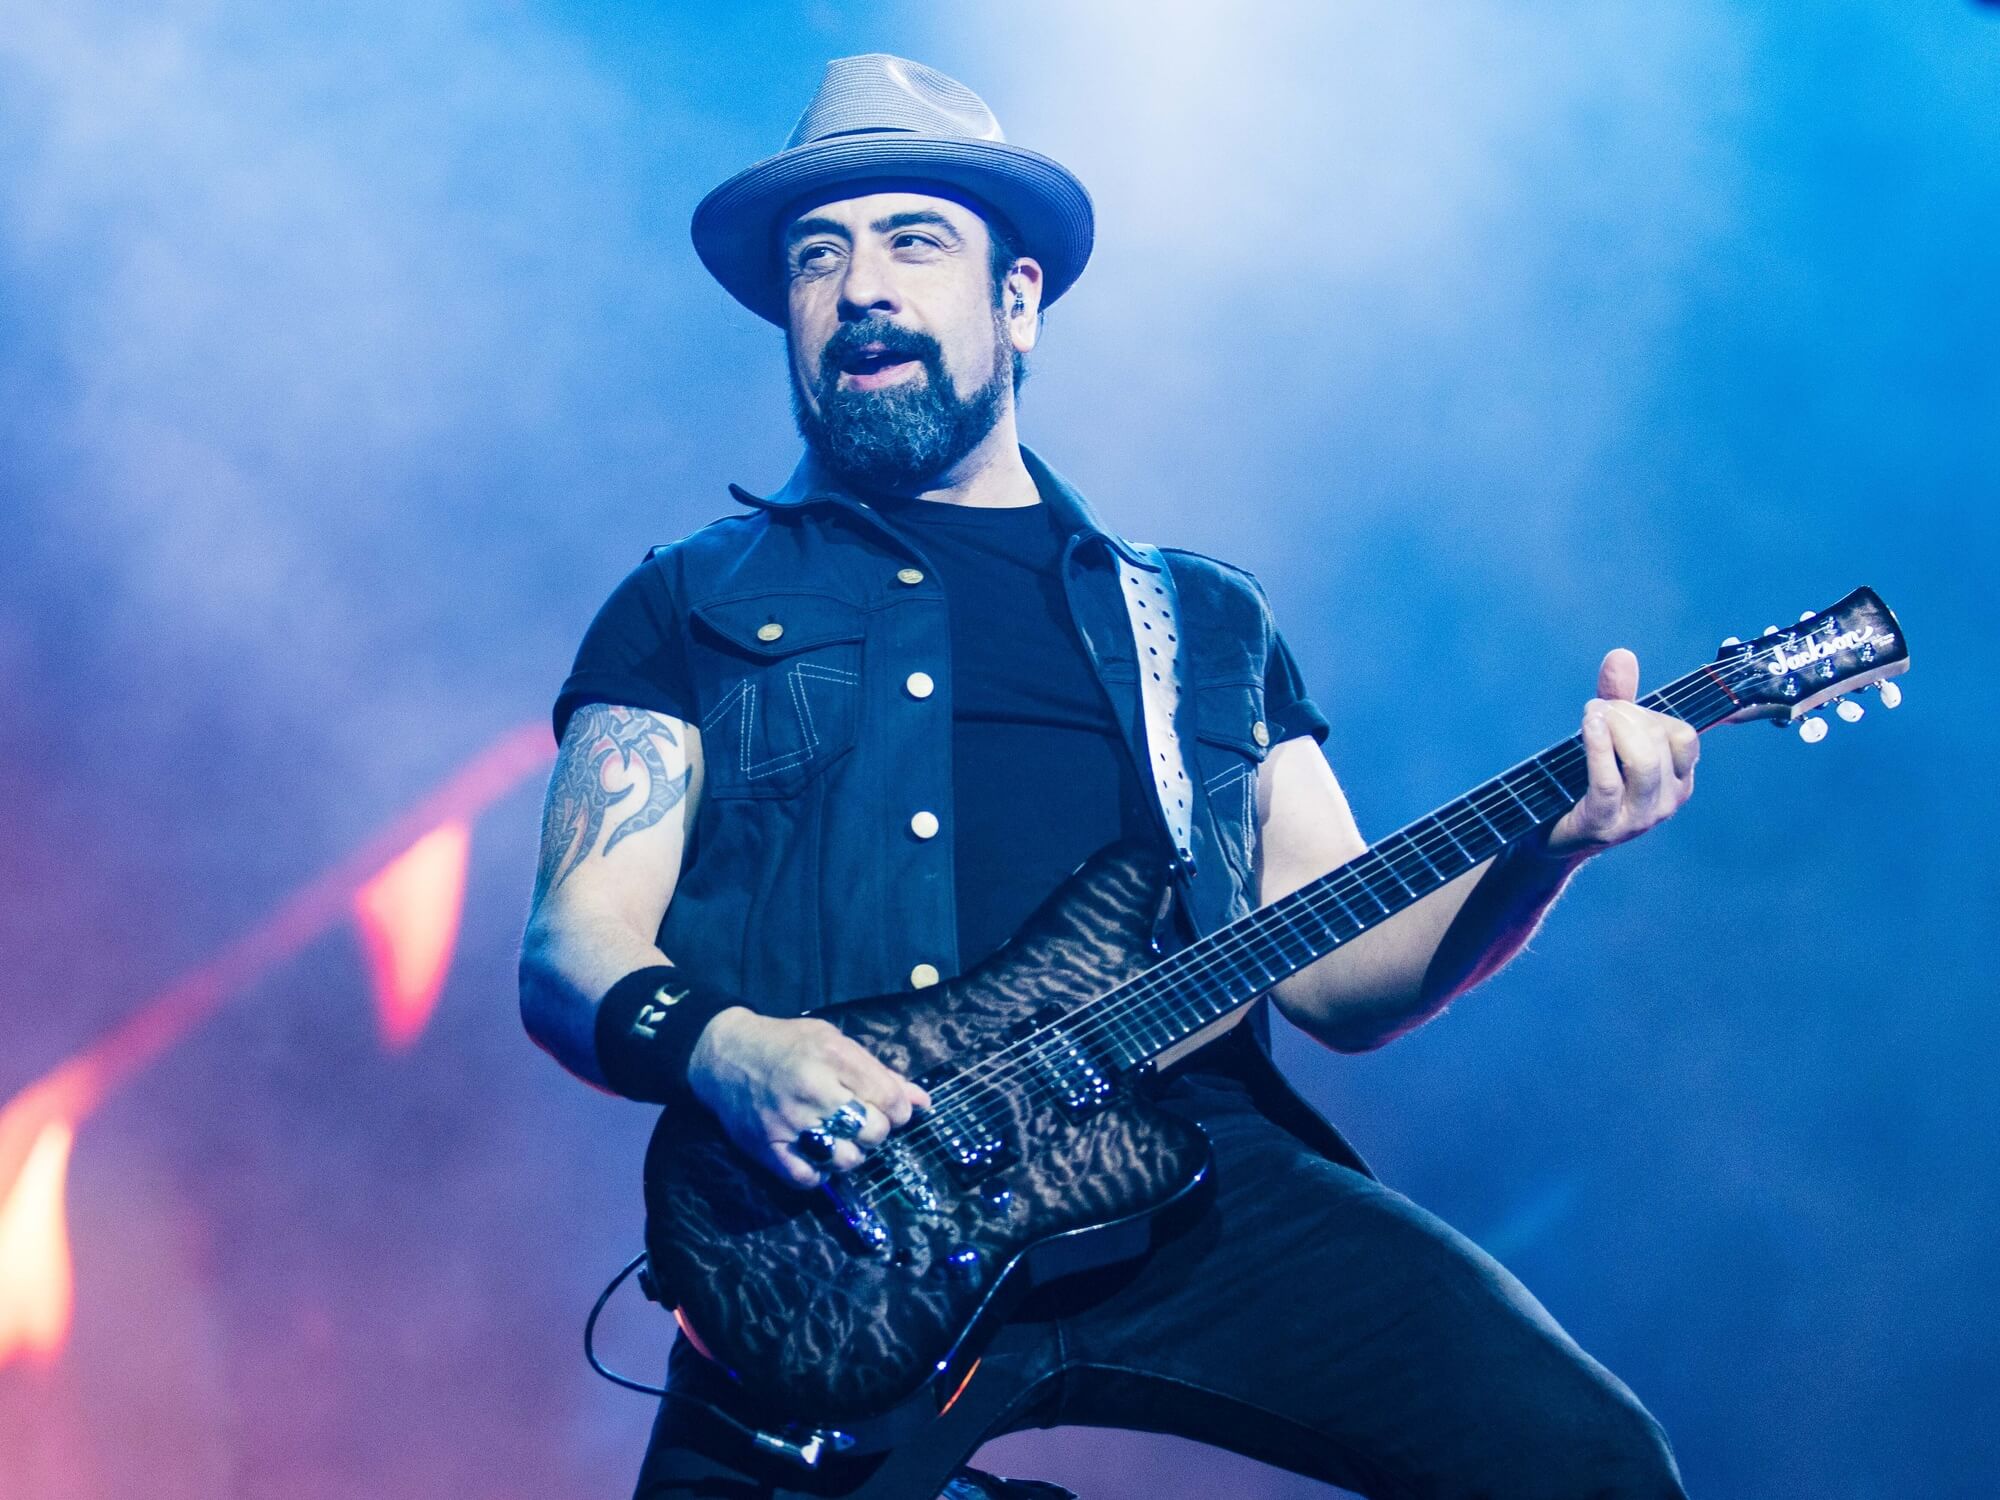 Former Volbeat guitarist Rob Caggiano